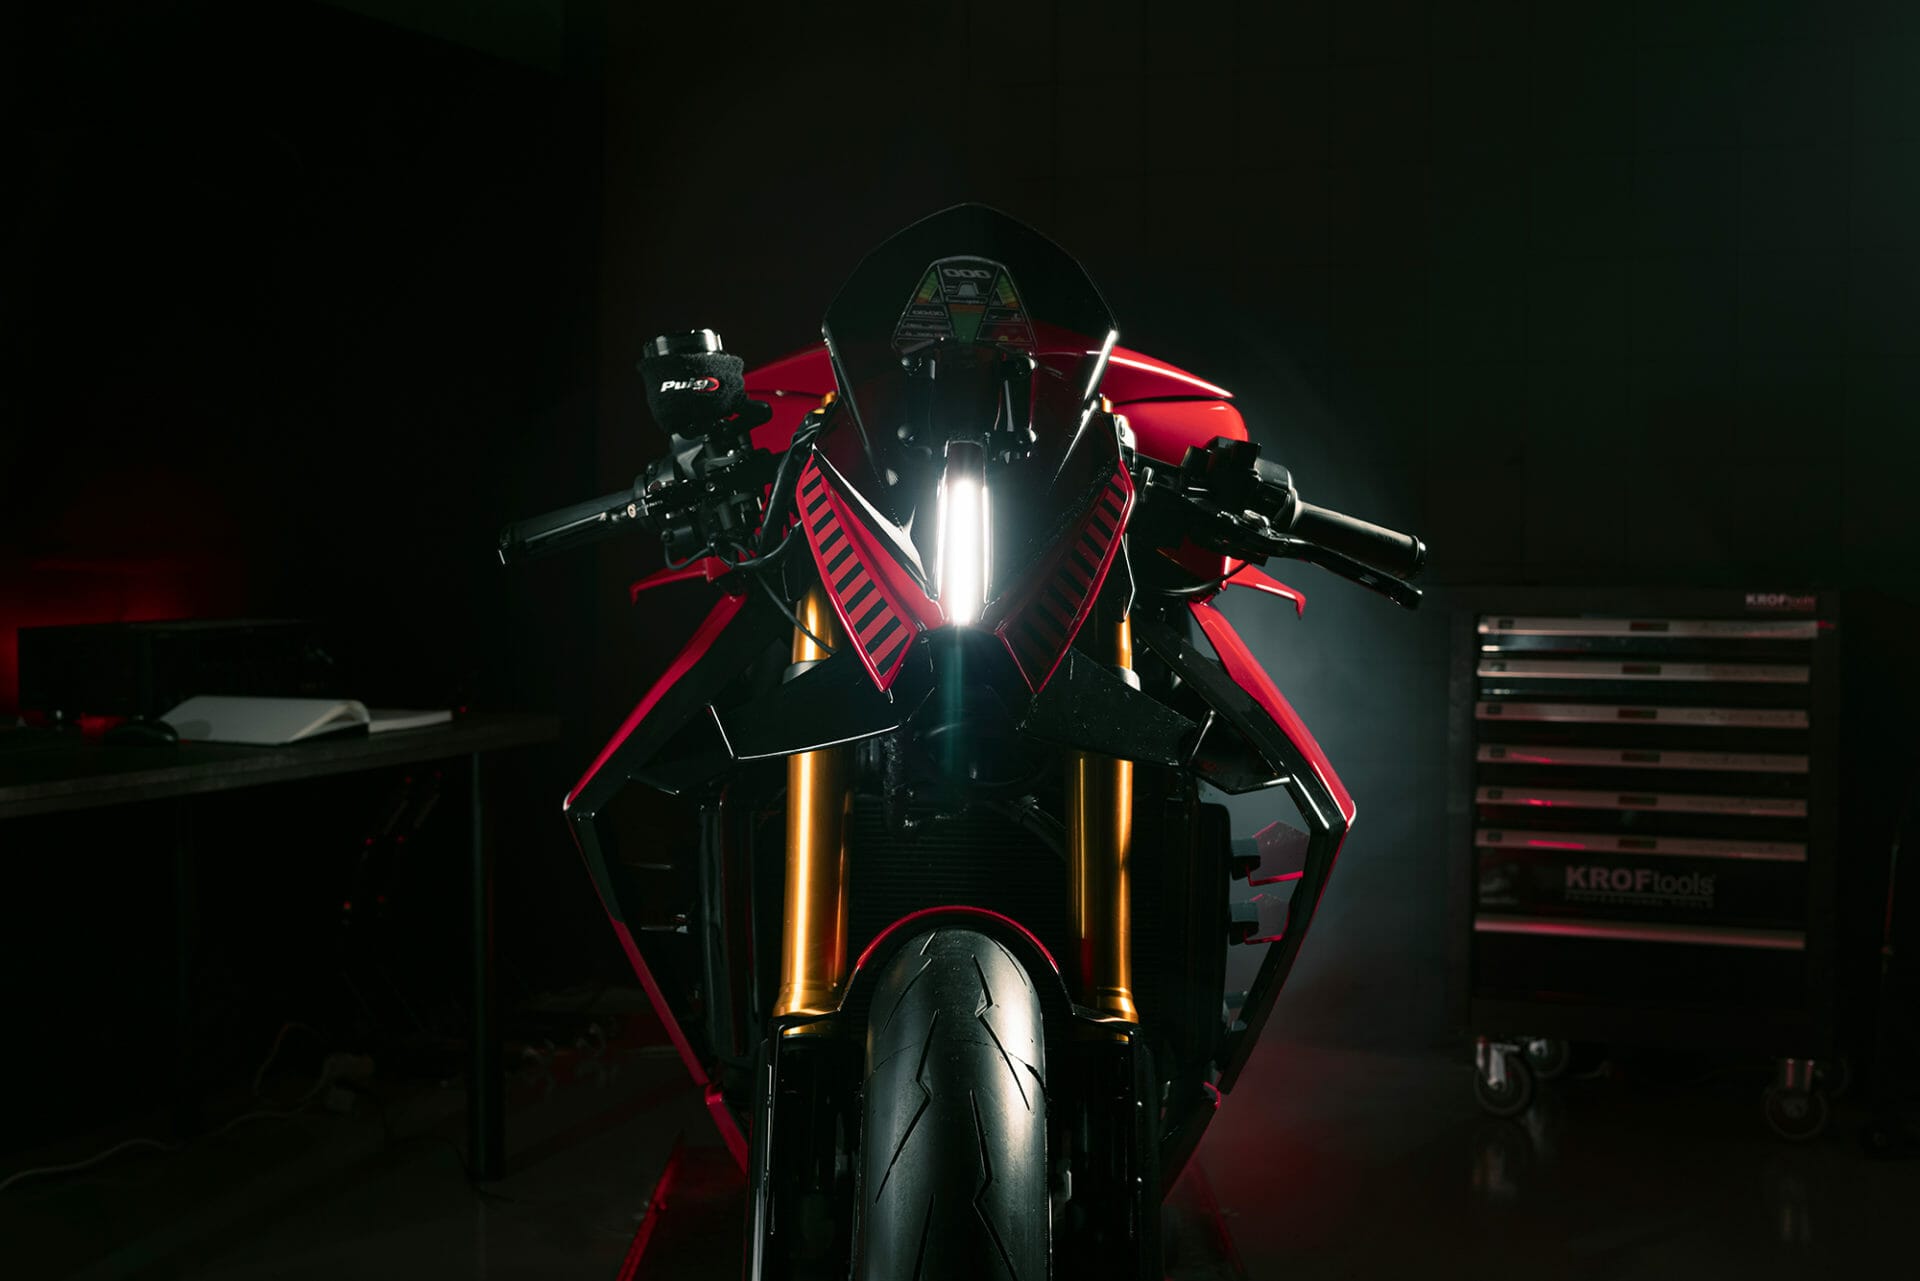 Puig verwandelt Naked-Bike in futuristisches Superbike – Puig Diablo
- MOTORCYCLES.NEWS via @motorradnachrichten